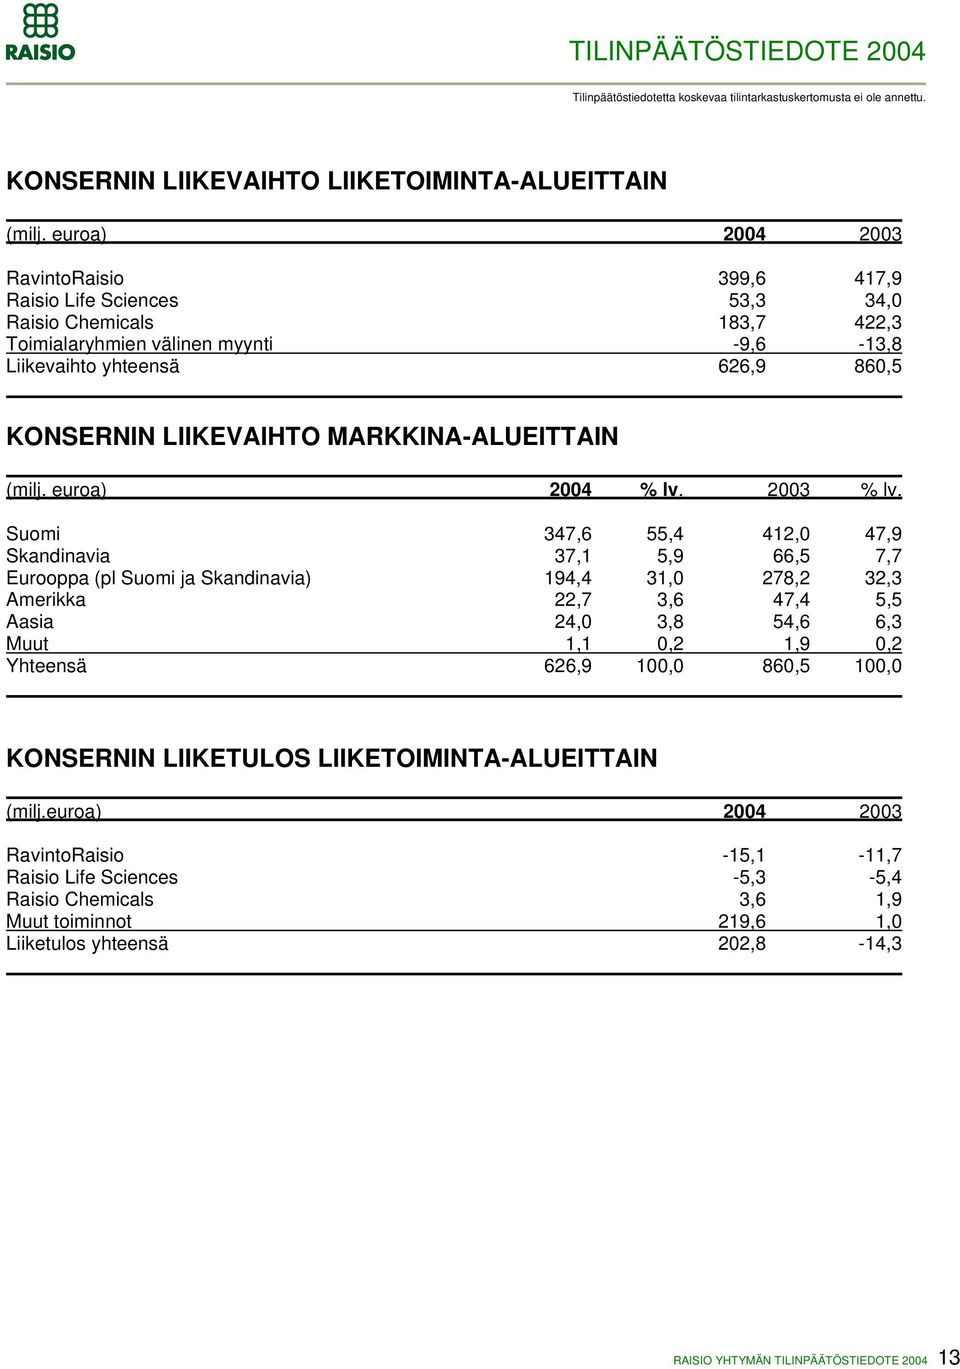 LIIKEVAIHTO MARKKINA-ALUEITTAIN (milj. euroa) 2004 % lv. 2003 % lv.